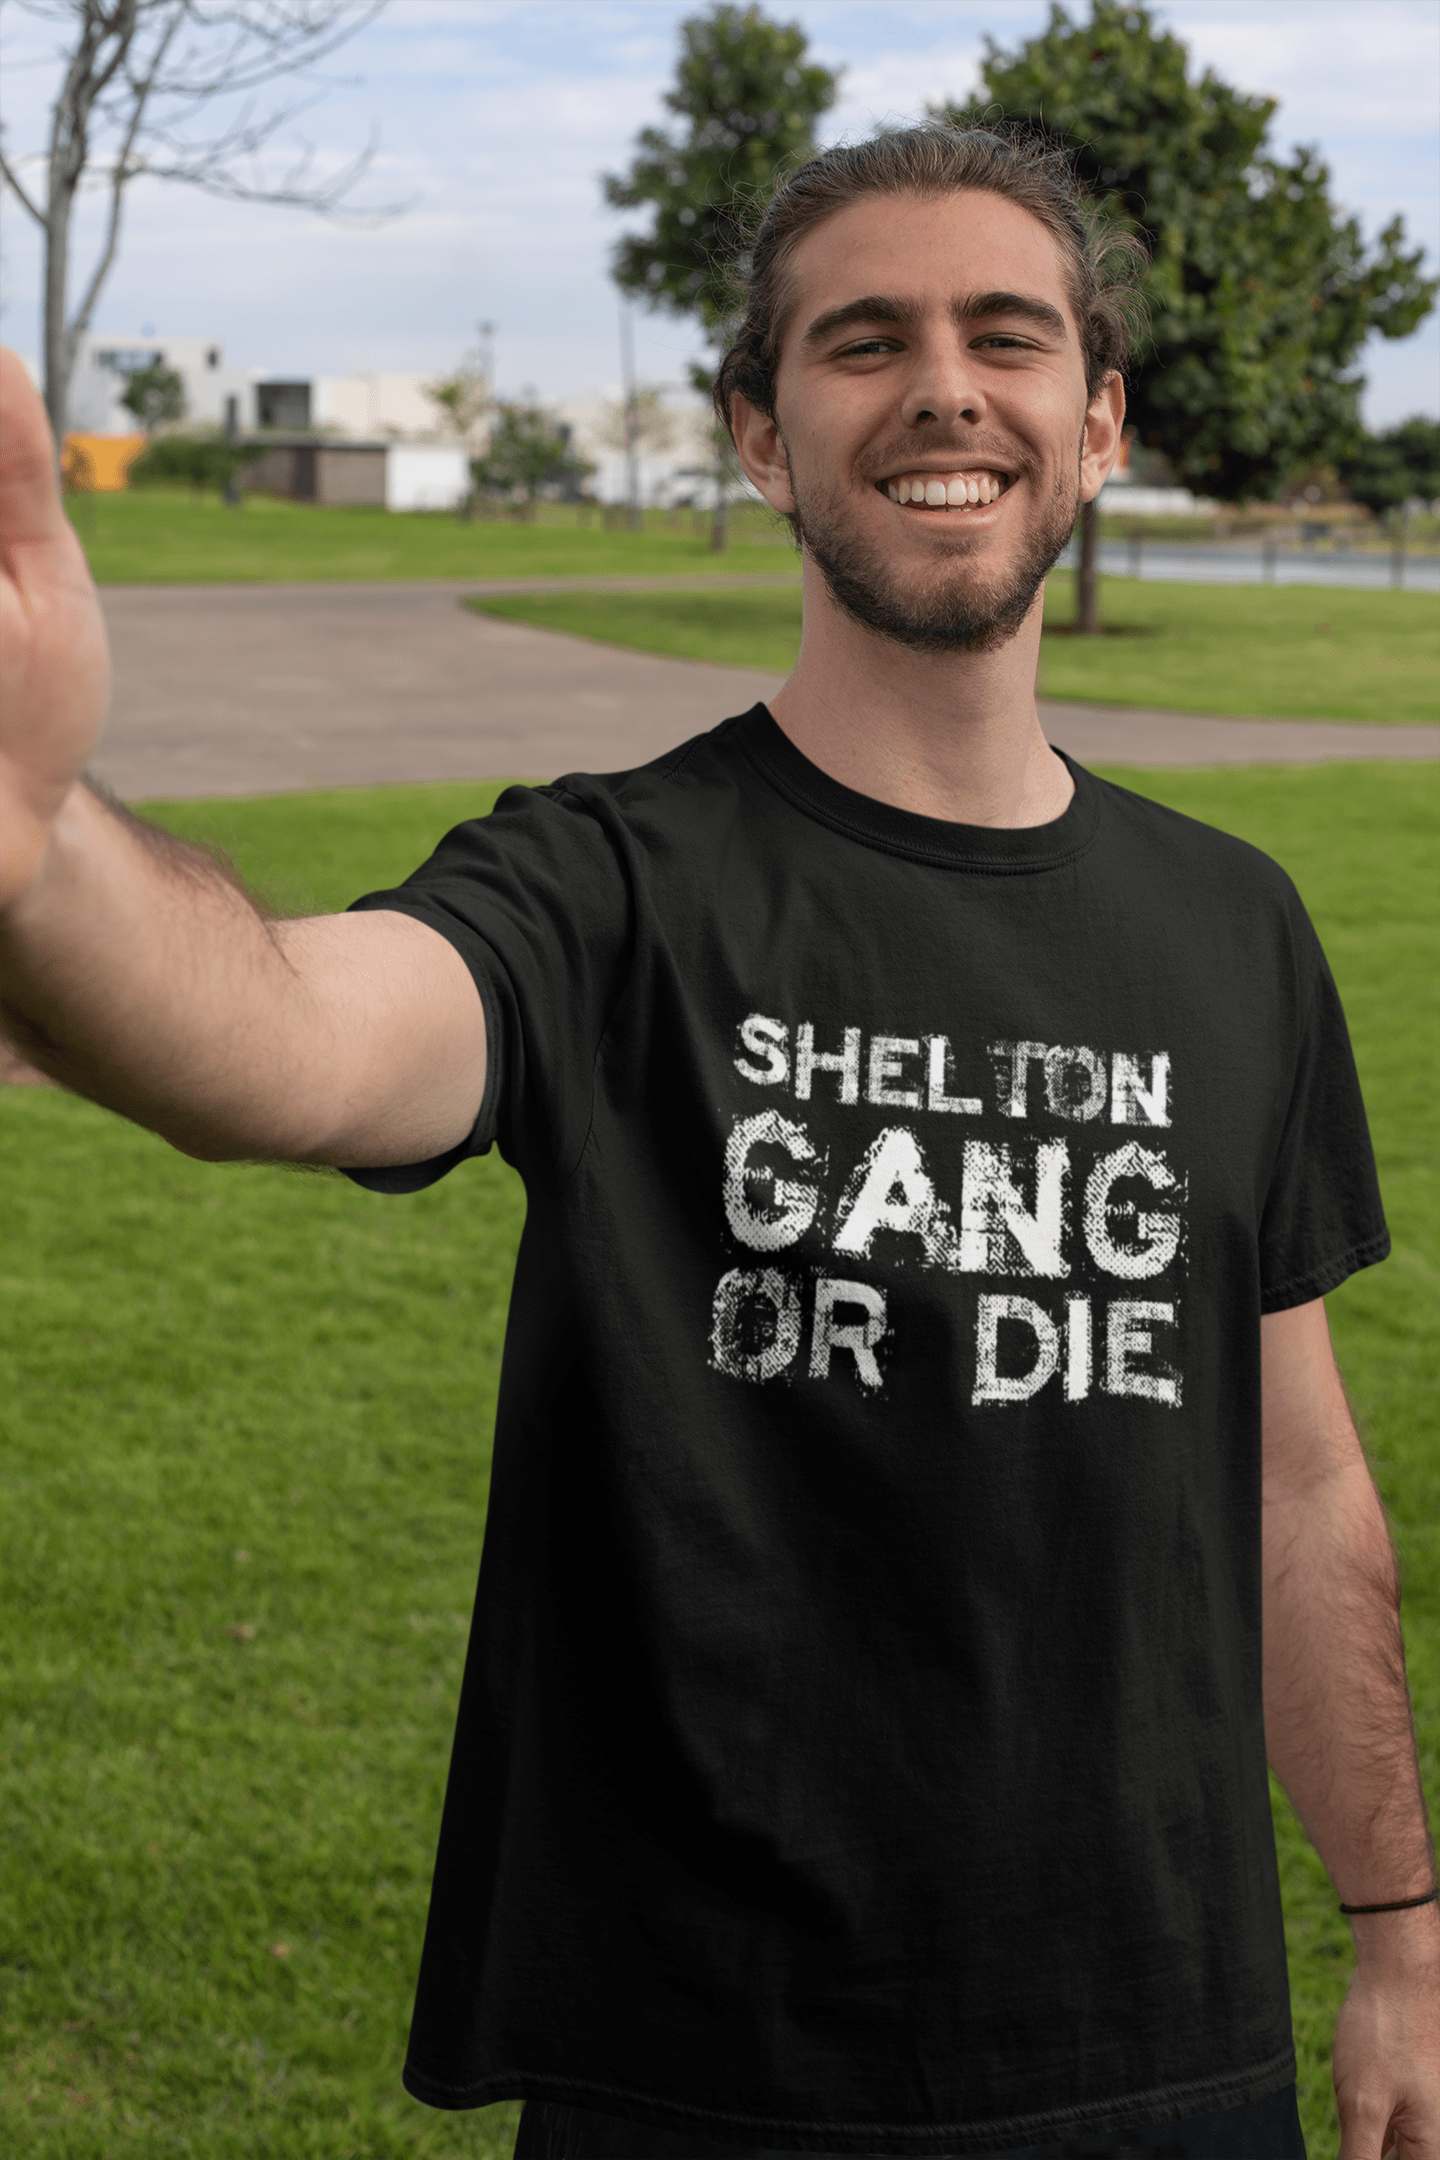 SHELTON Family Gang Tshirt, Men's Tshirt, Black Tshirt, Gift T-shirt Round Neck 00033